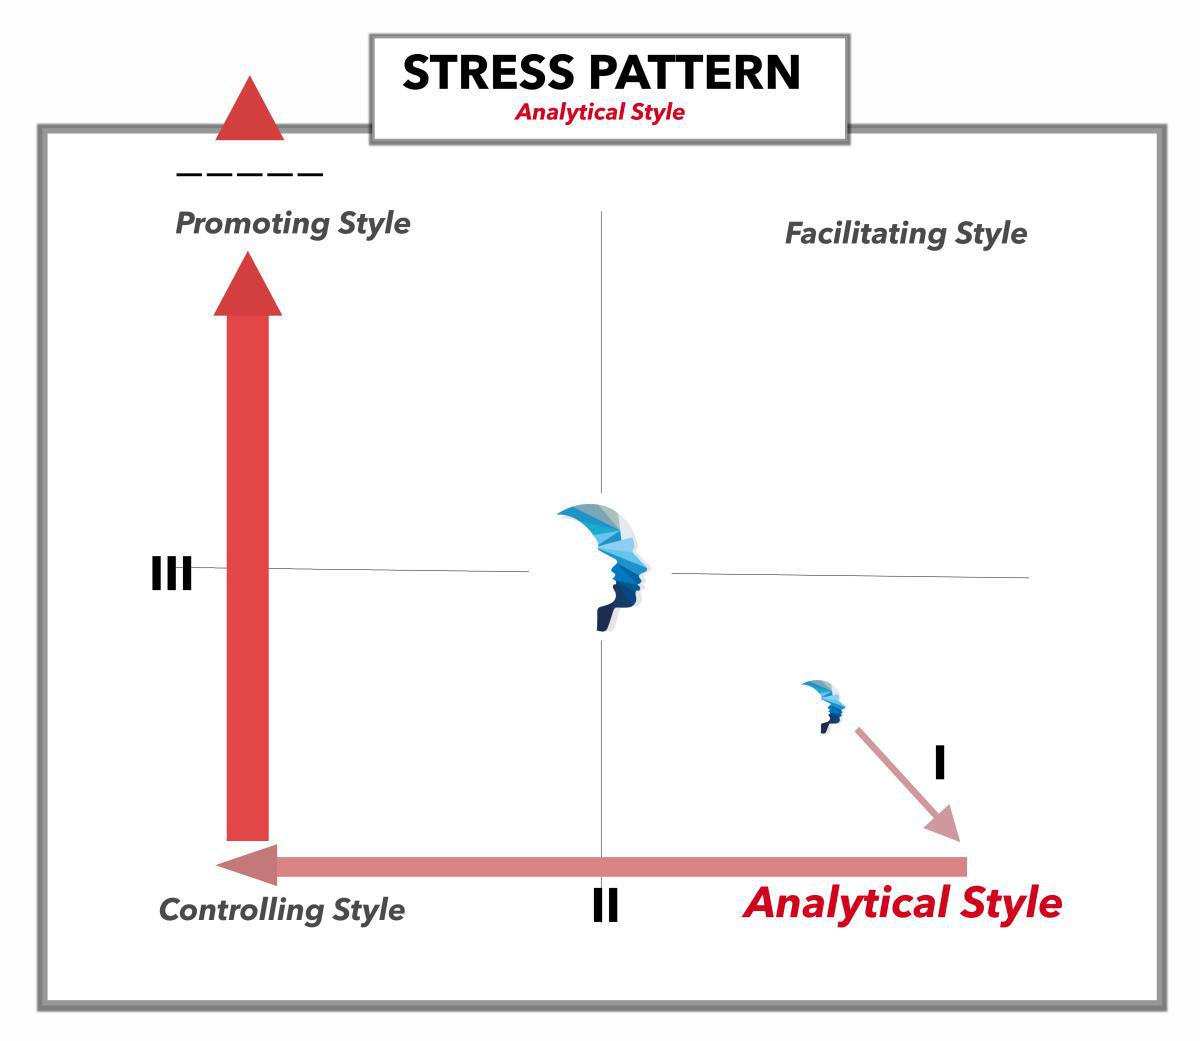 Analytical Style - Stresspattern